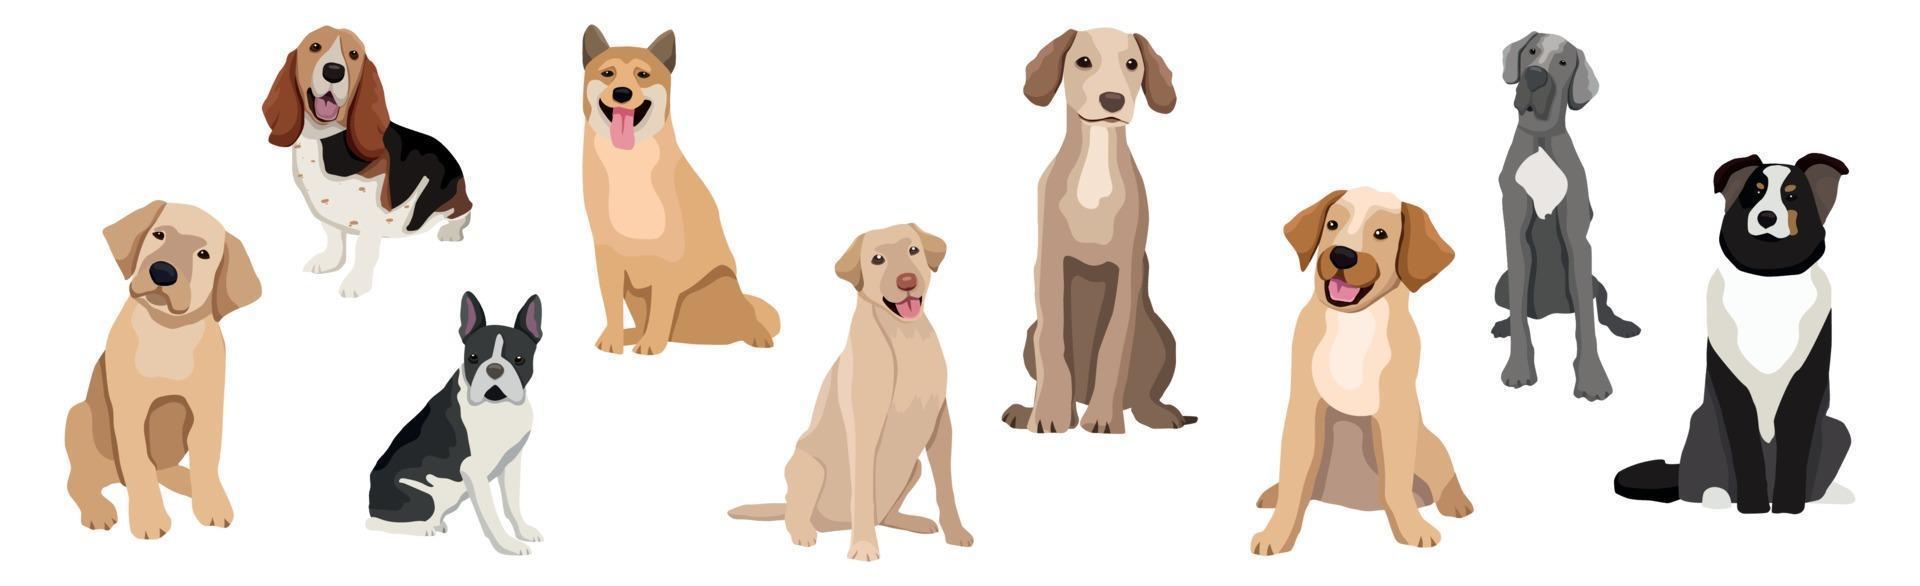 una selección de nueve perros realistas de diferentes razas vector